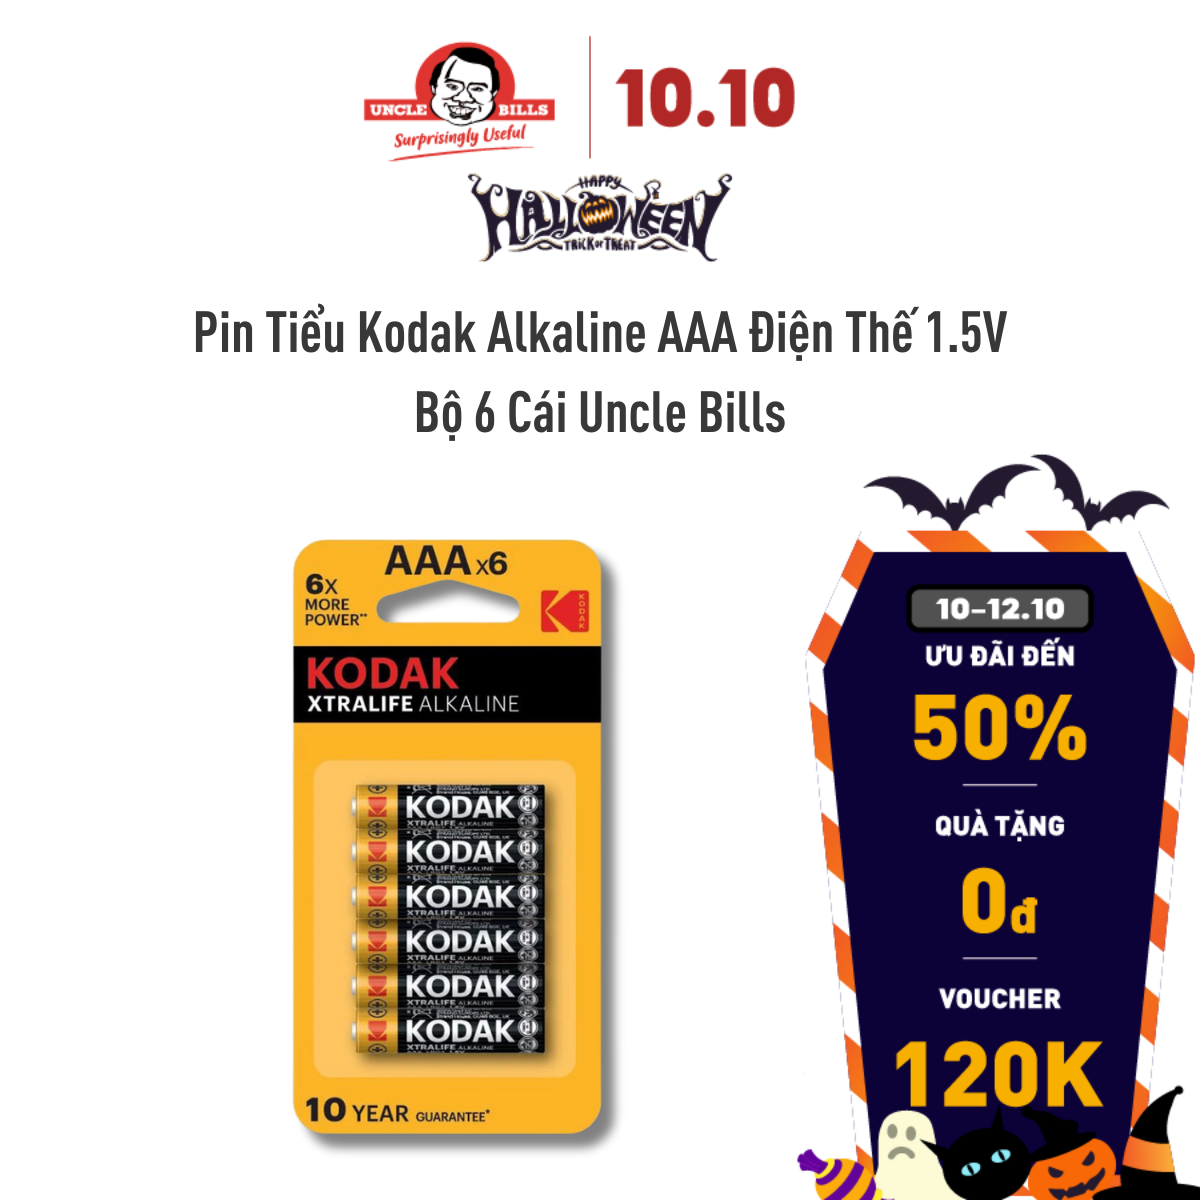 Pin Tiểu Kodak Alkaline AAA điện thế 1.5V Bộ 6 Pin Uncle Bills IB0217